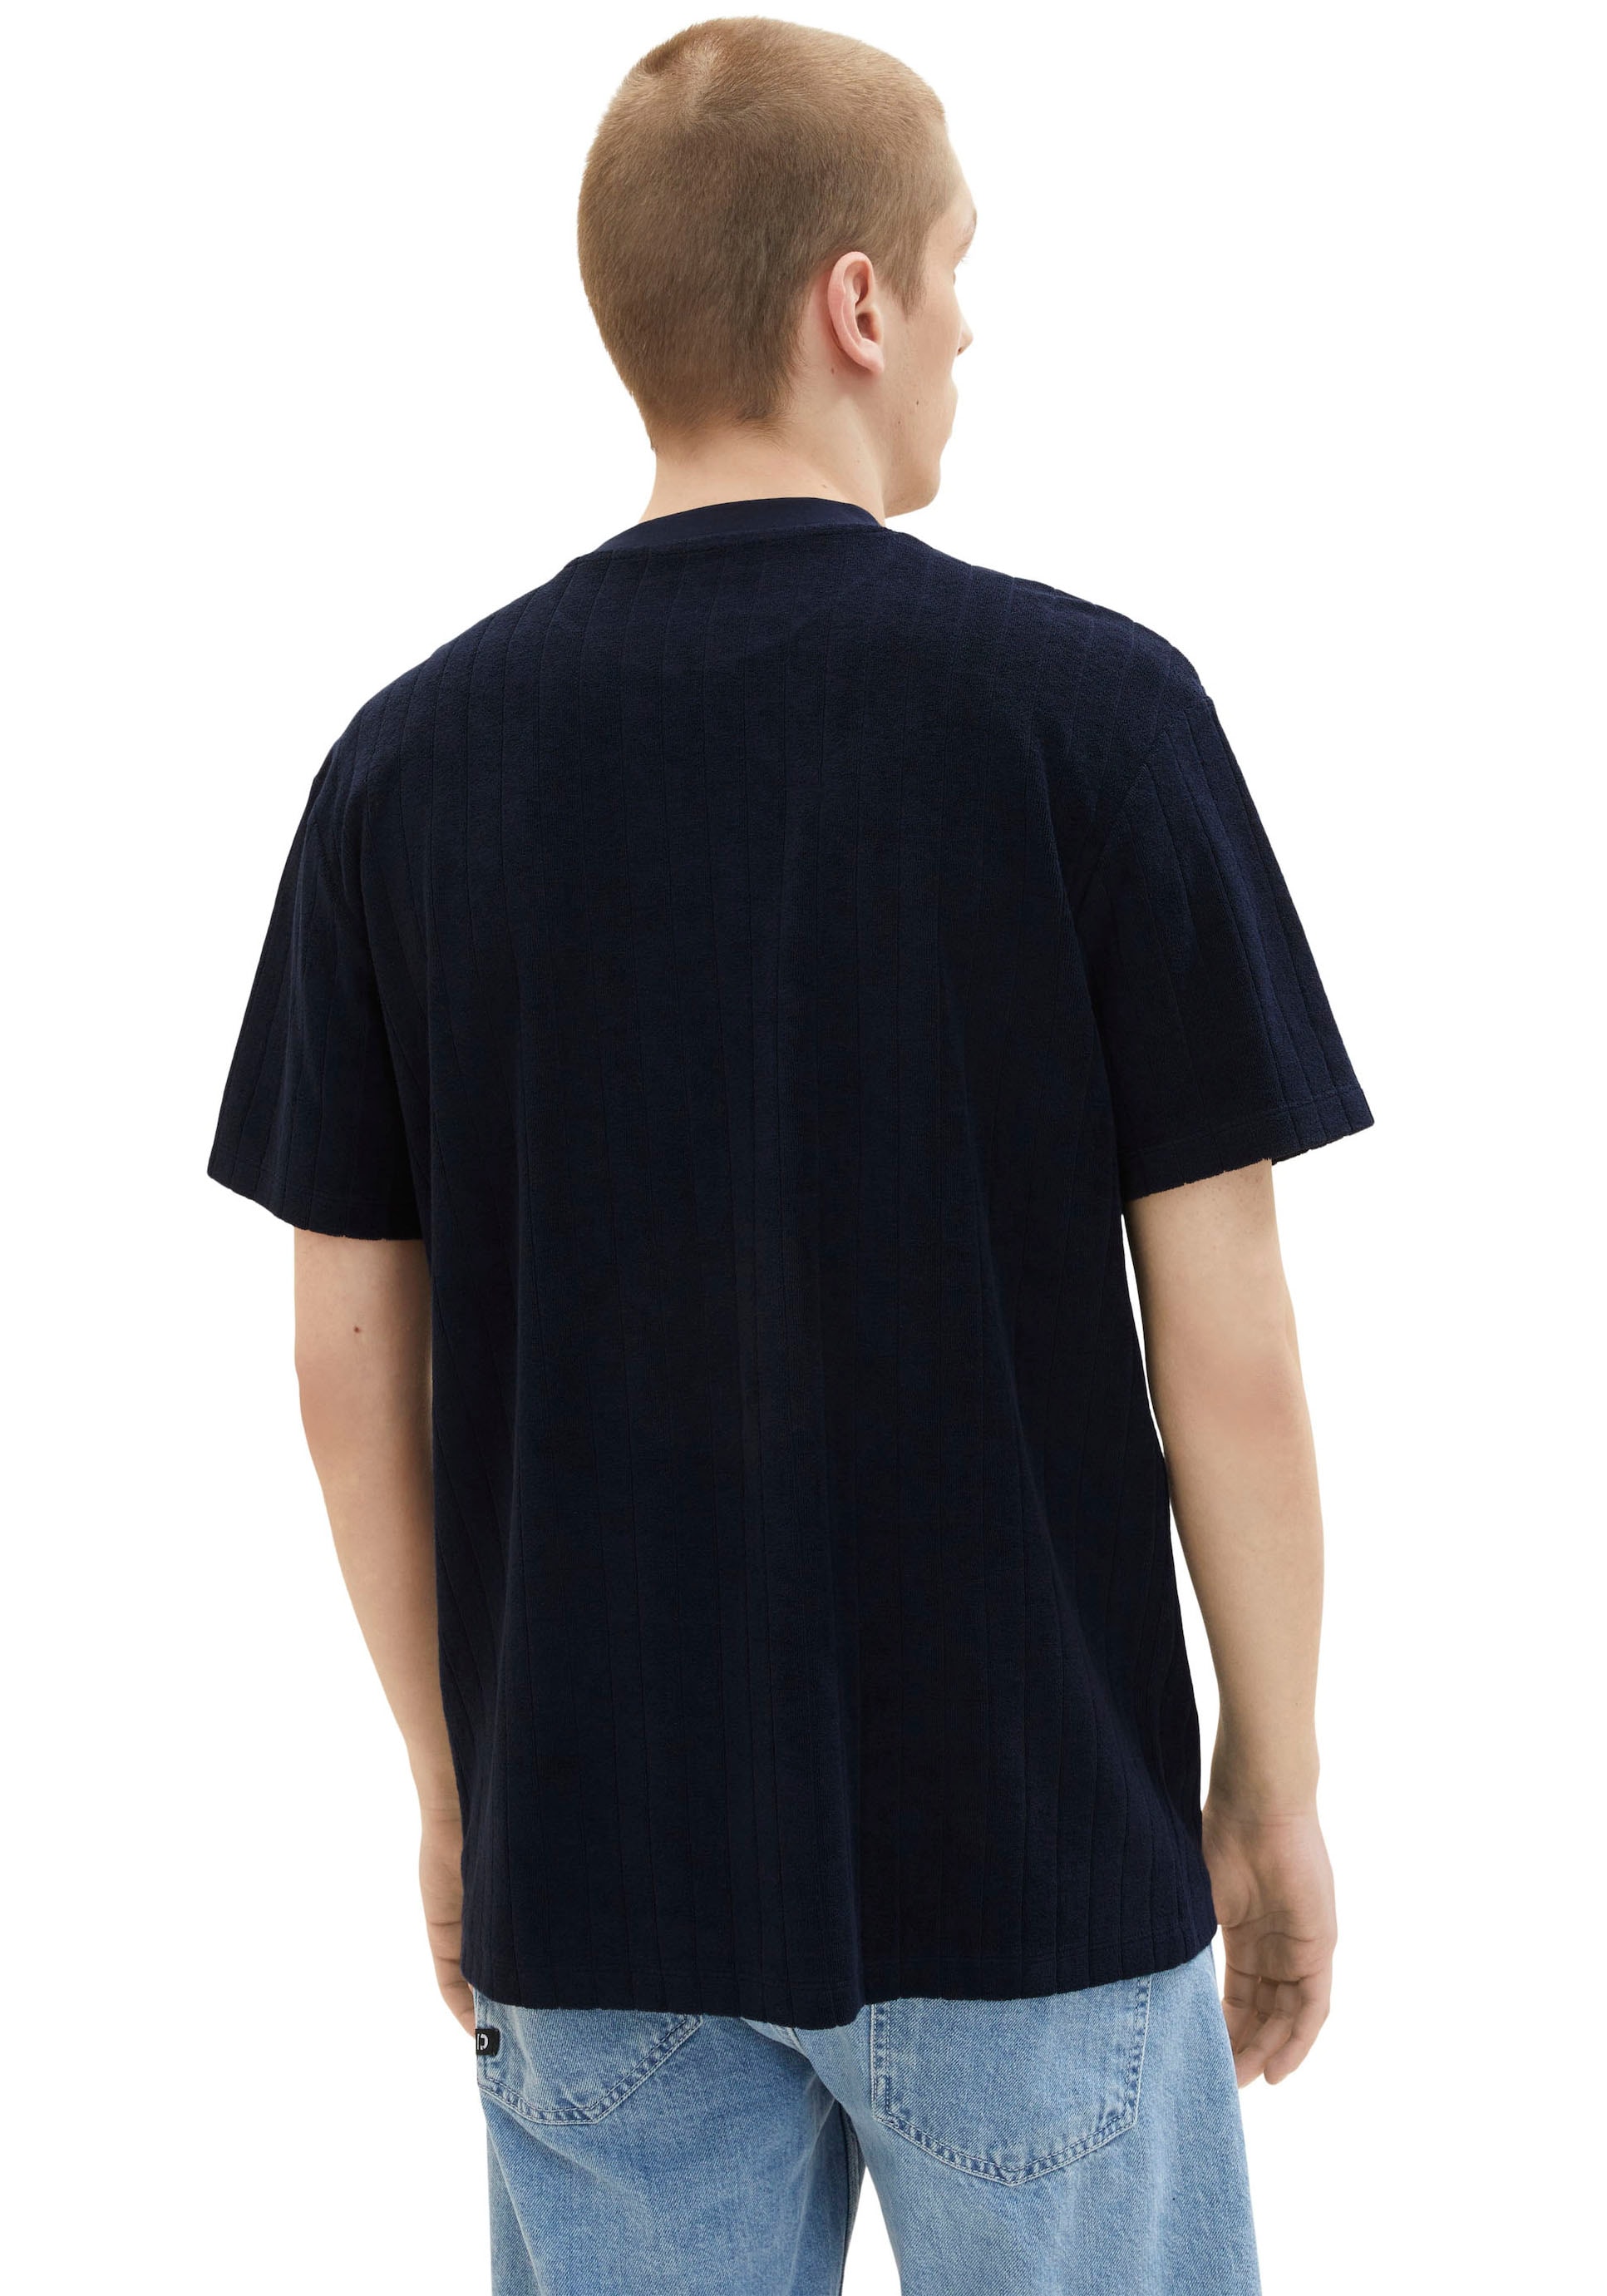 TOM TAILOR Denim T-Shirt, Sweatware kaufen BAUR aus ▷ strukturierter 